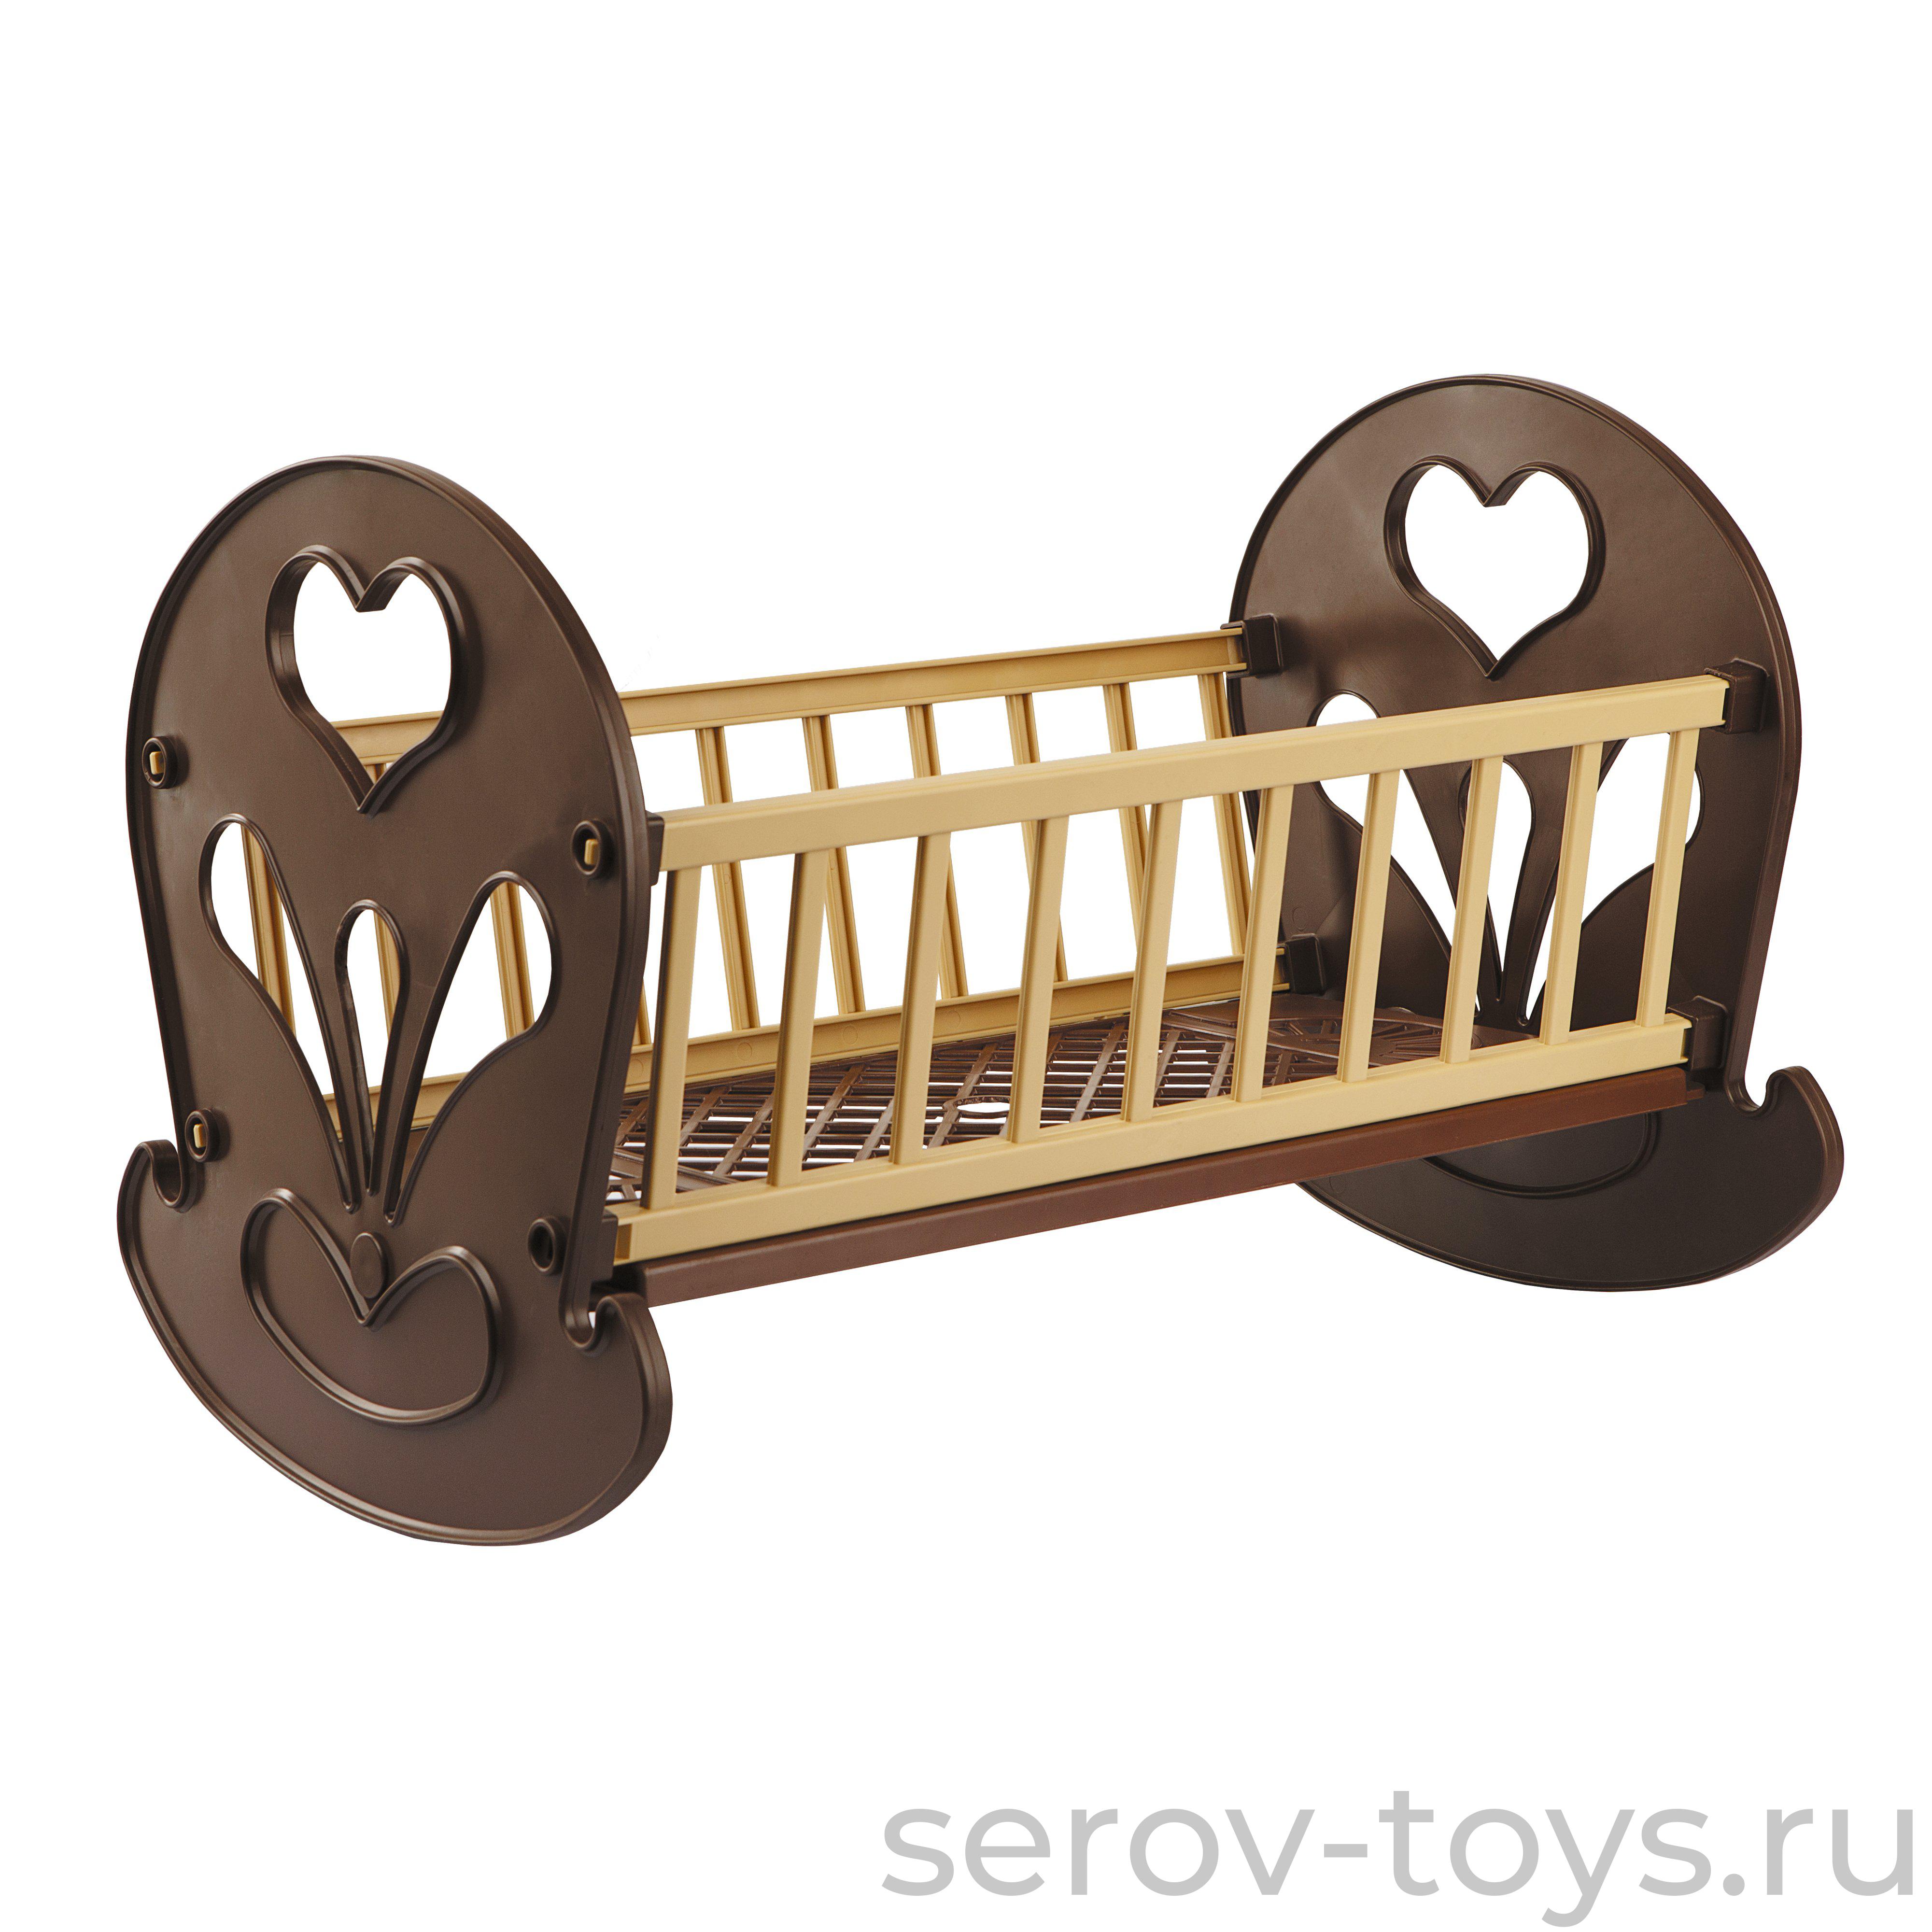 Мебель Кровать качалка шоколад С-1587 Огонек